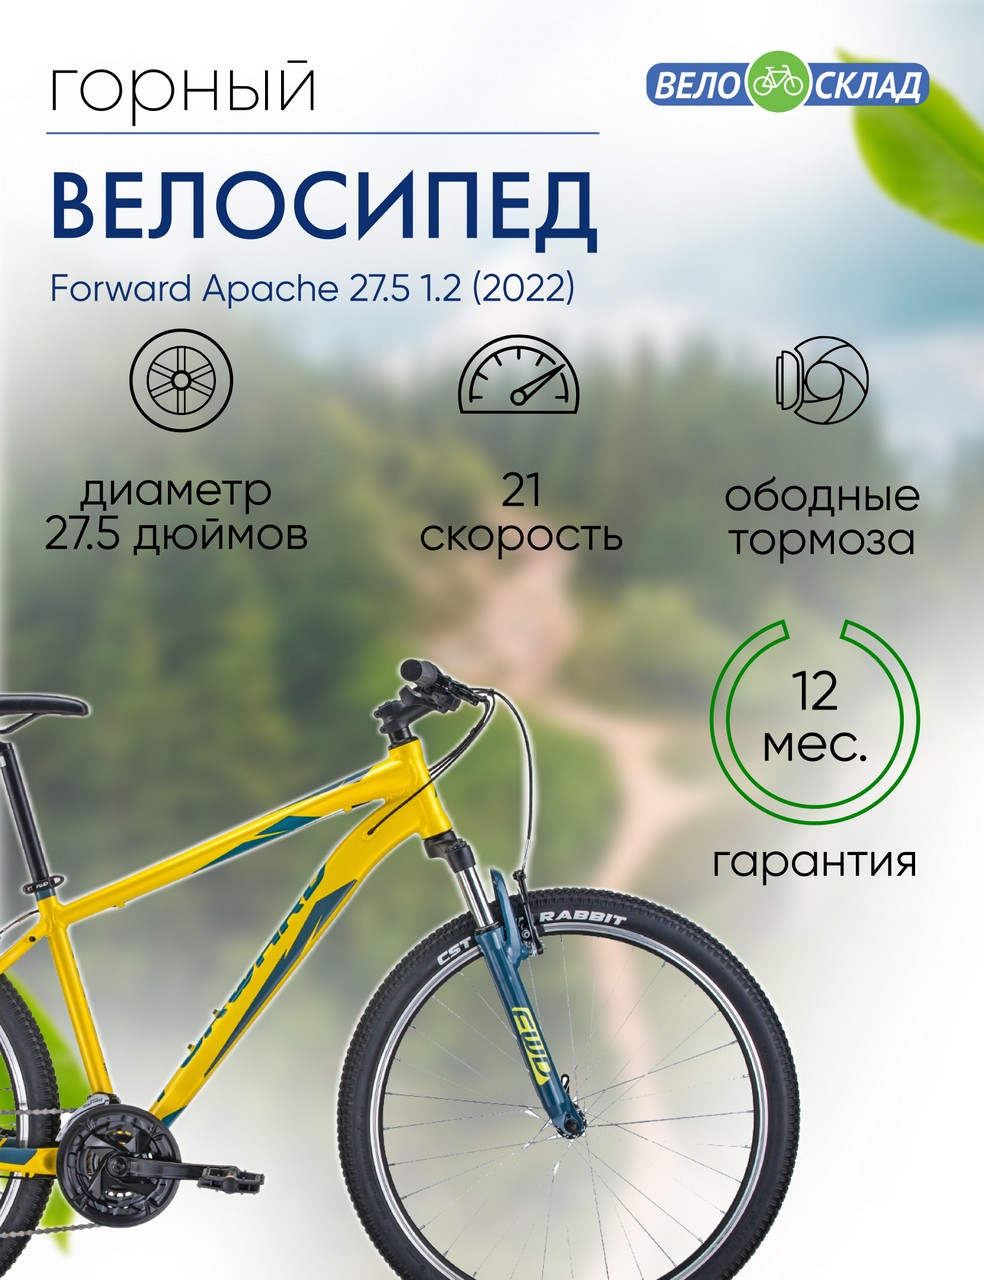 Горный велосипед Forward Apache 27.5 1.2, год 2022, цвет Желтый-Зеленый, ростовка 17